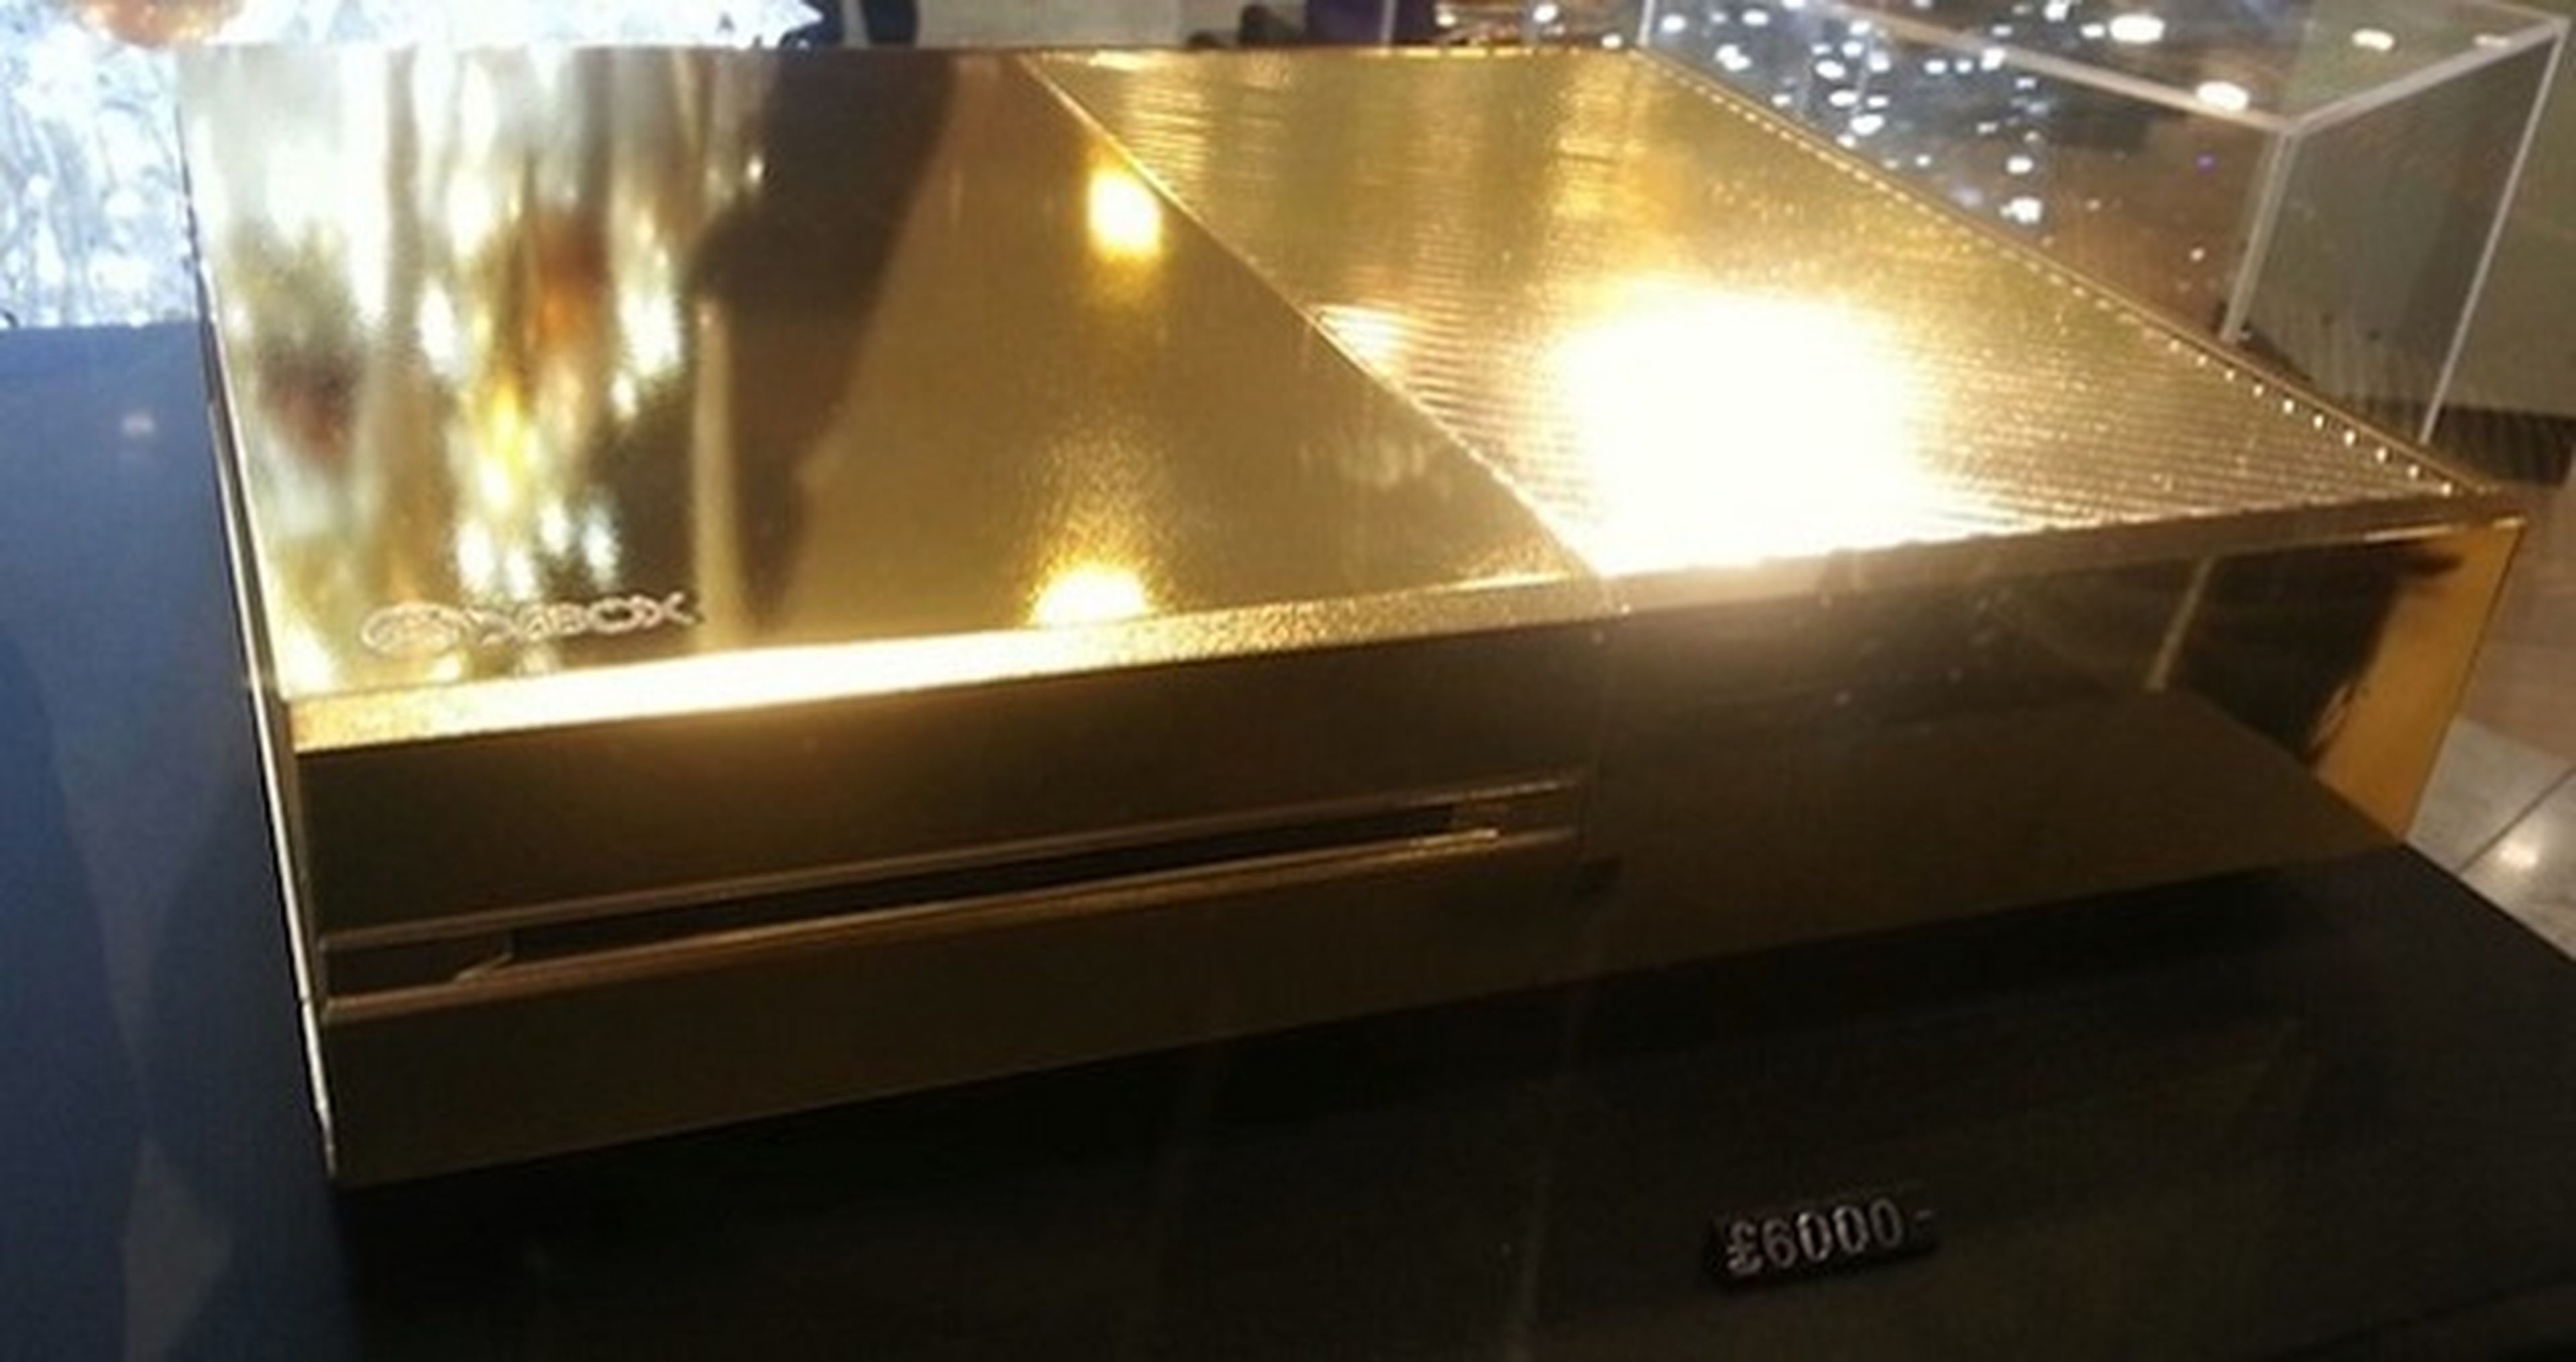 Una Xbox One de oro que cuesta 6000 libras